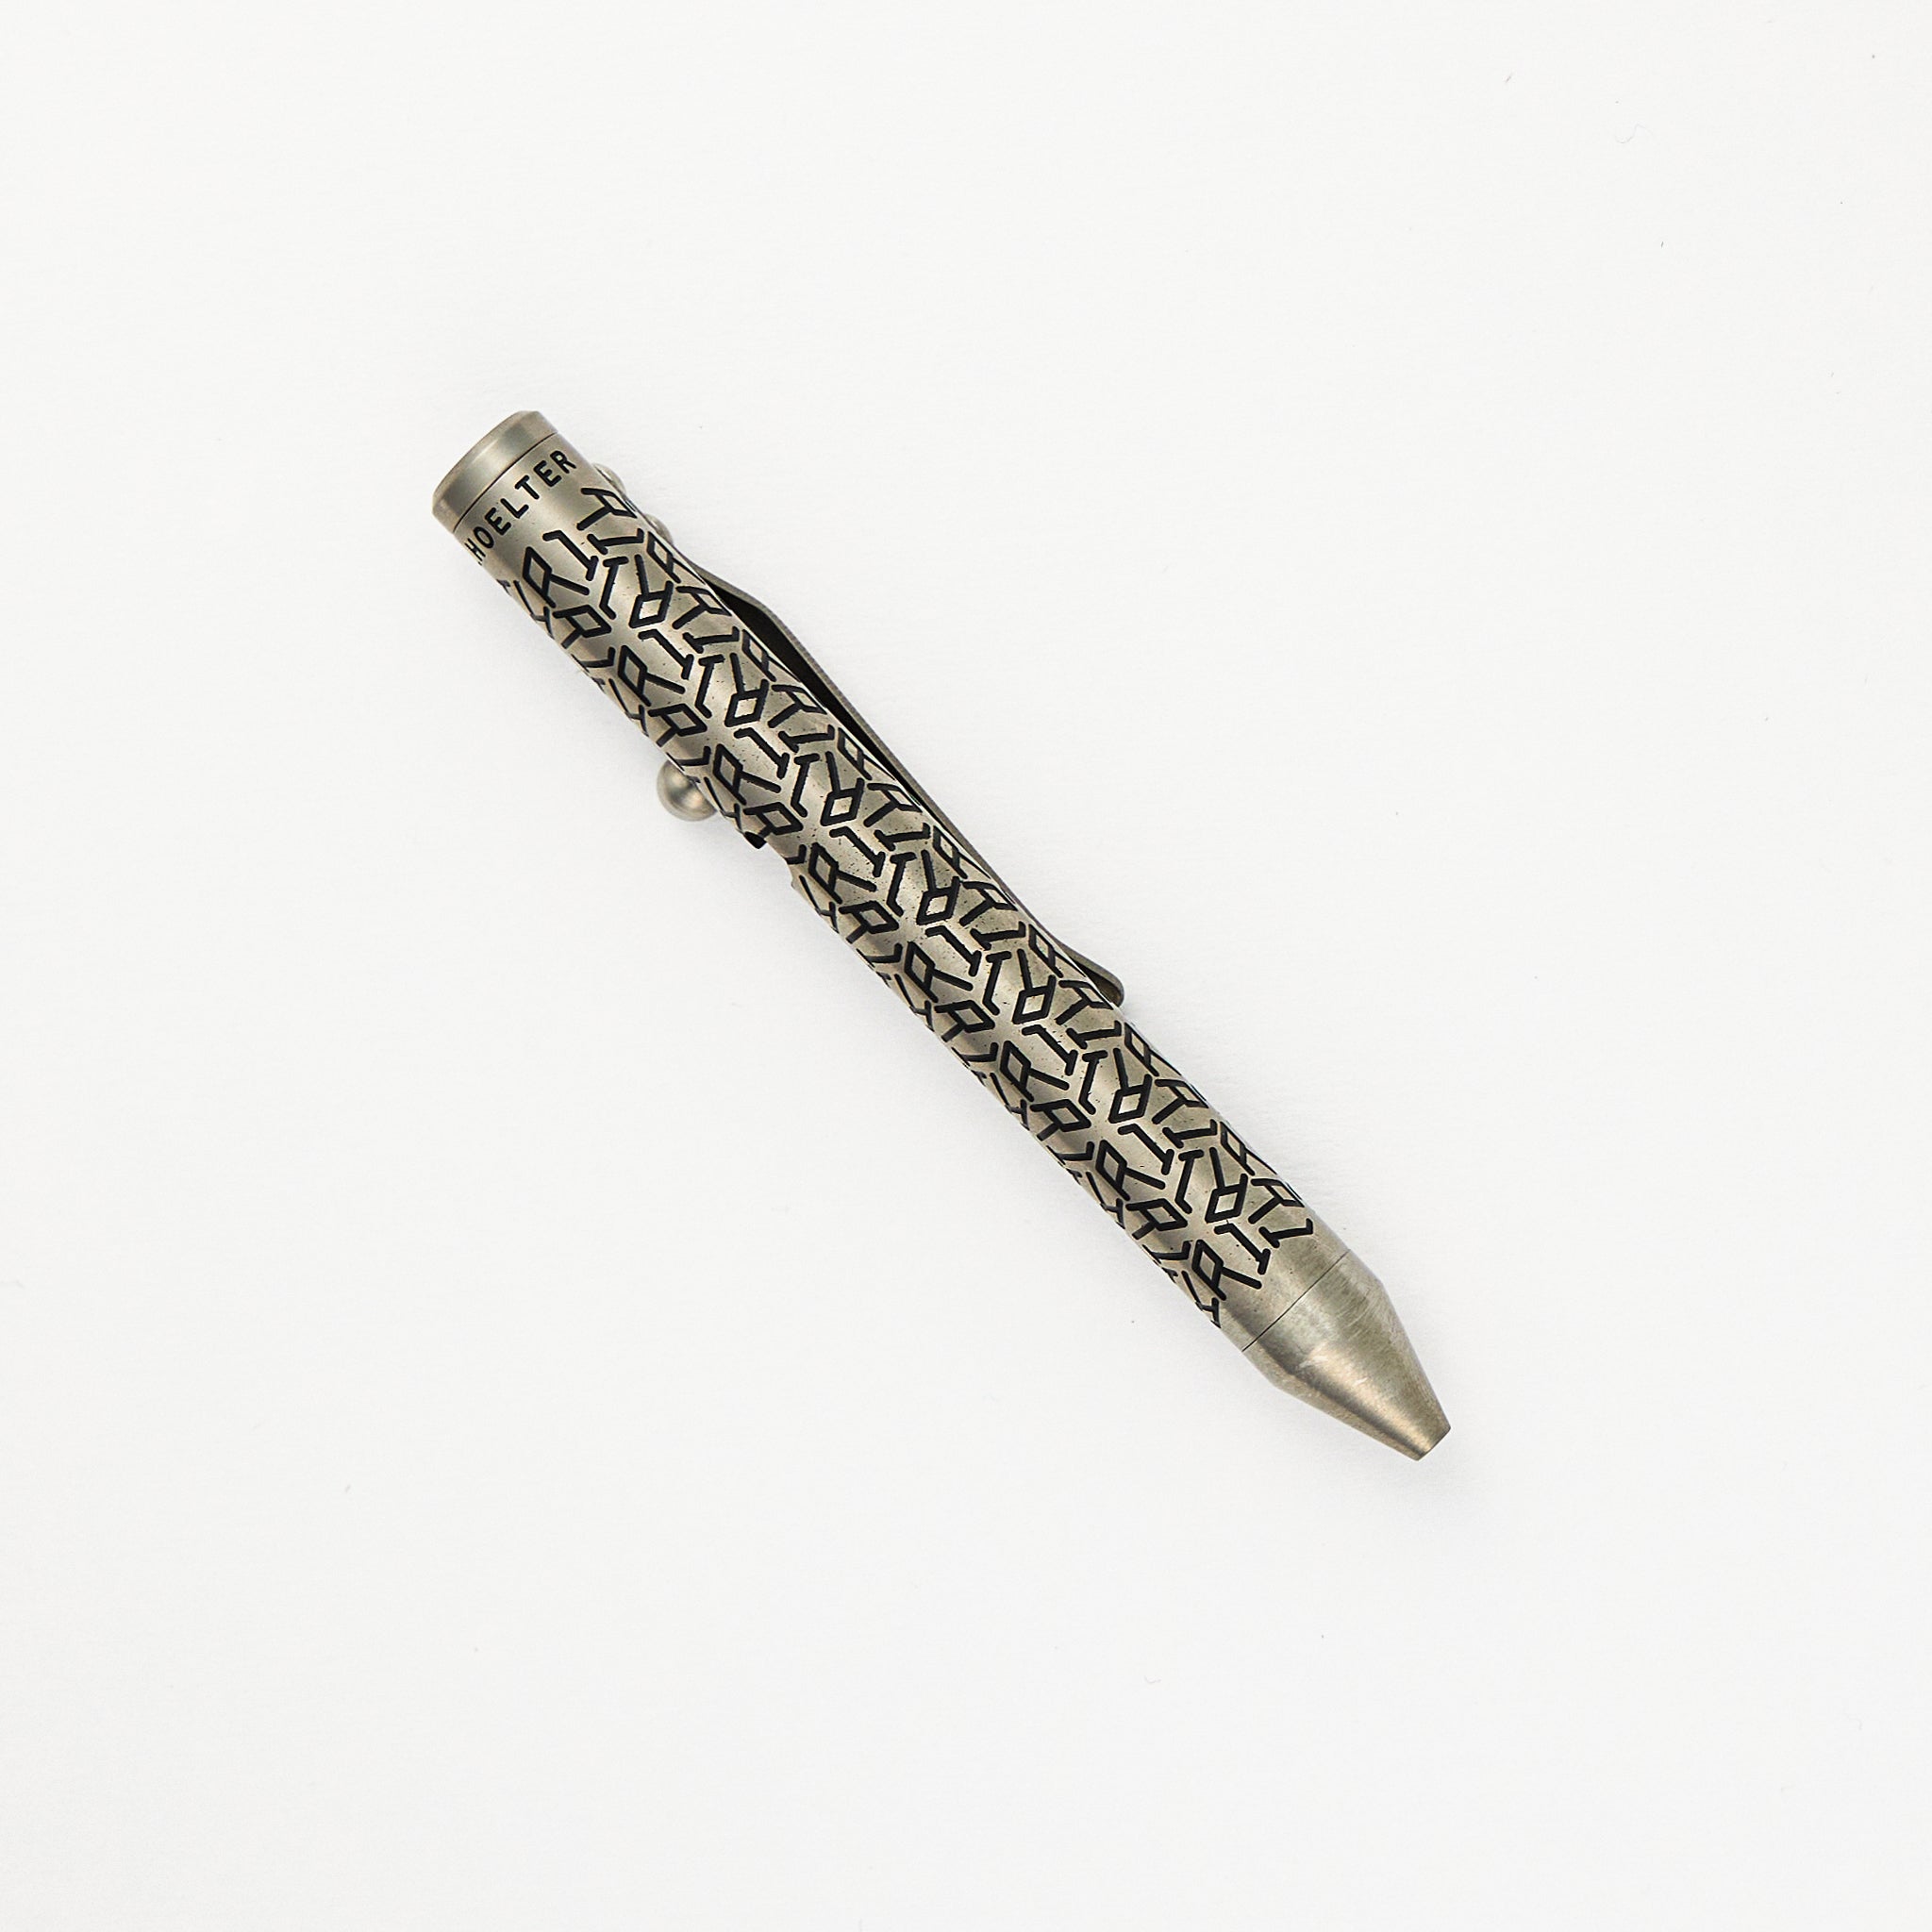 Fellhoelter/Cptn Axel TinyBolt Pen – Titanium “Tuxedo” R1P